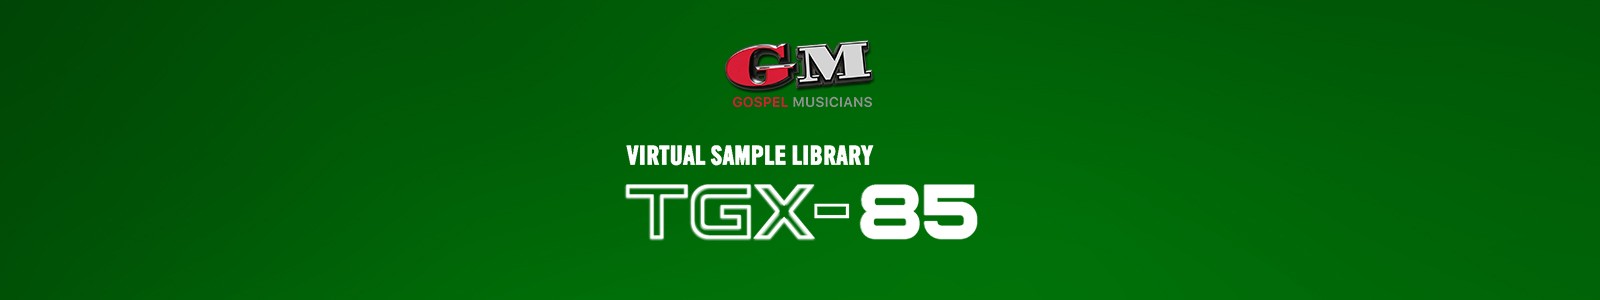 TGX-85 by Gospel Musicians